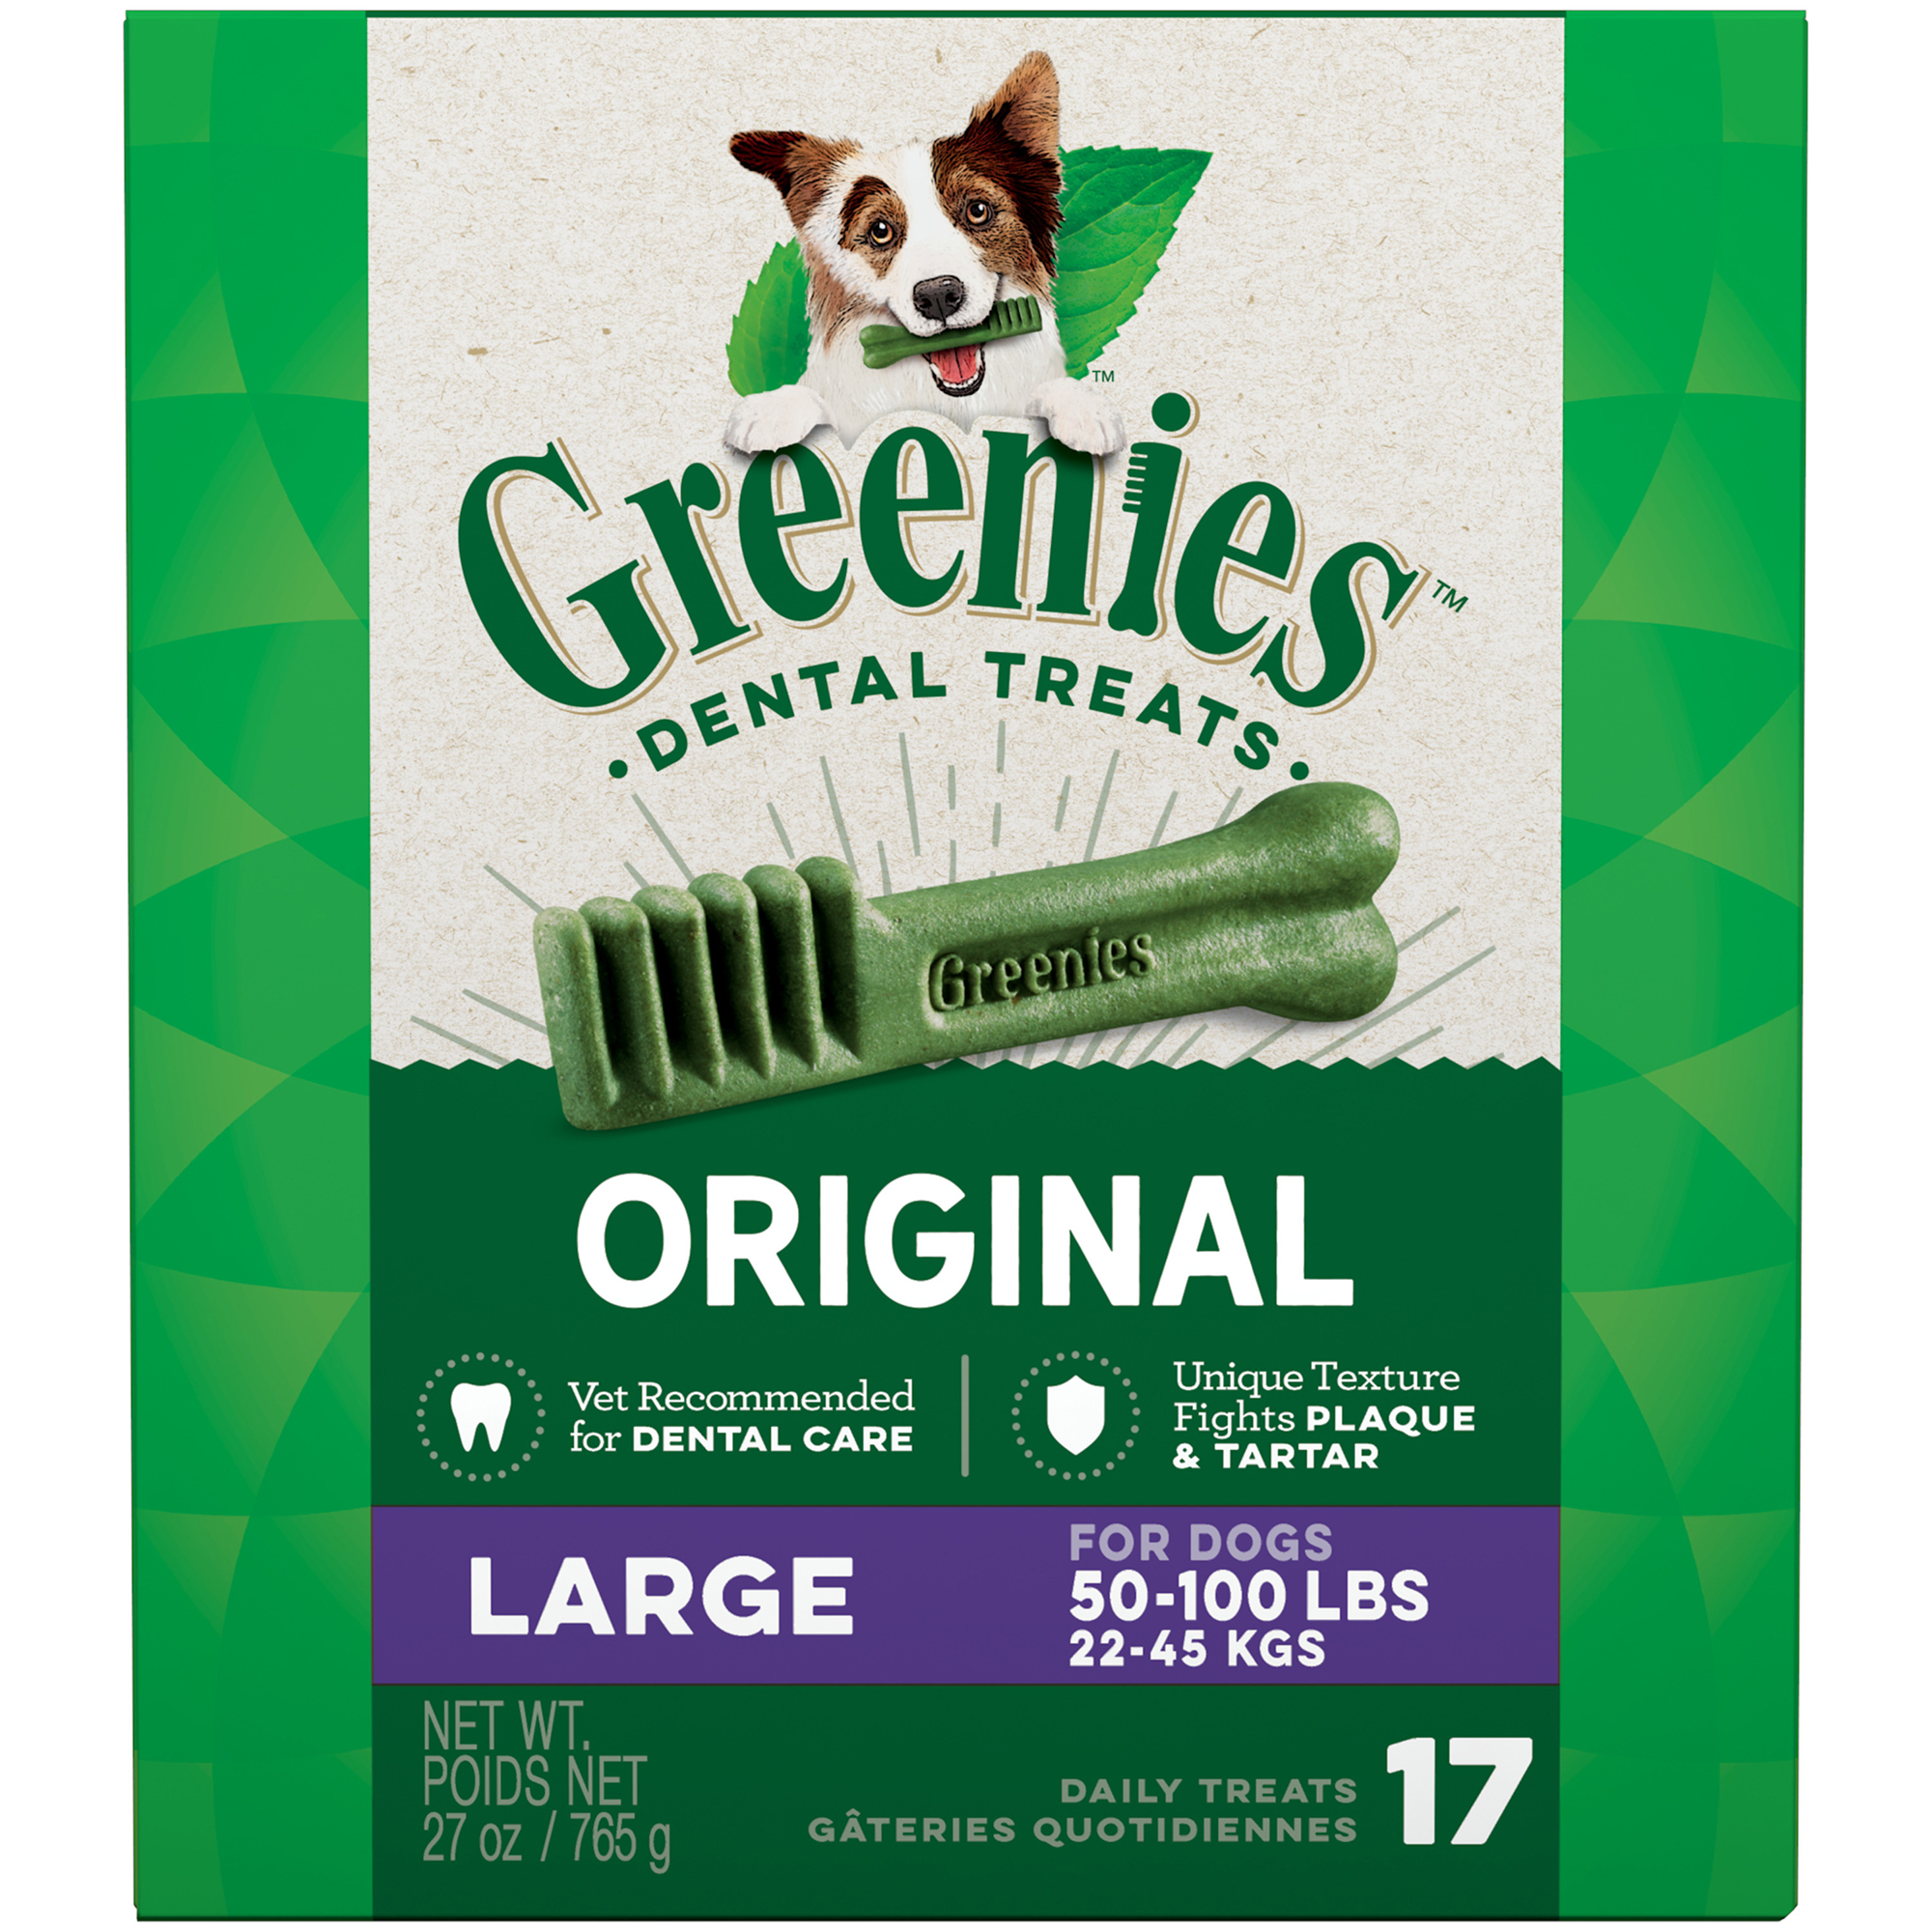 Greenies Original Natural Dent...